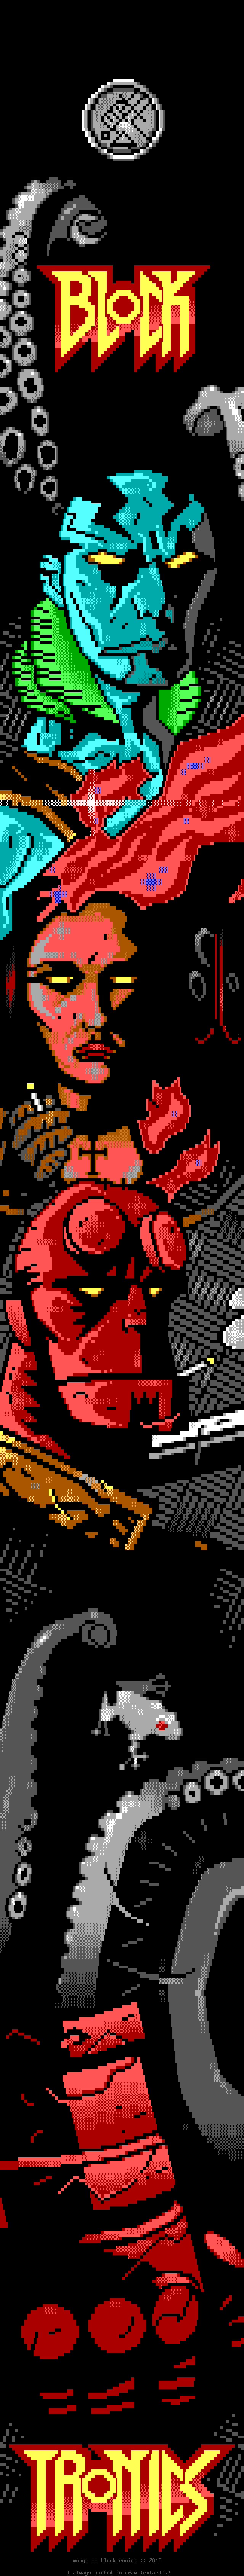 Hellboy by mongi